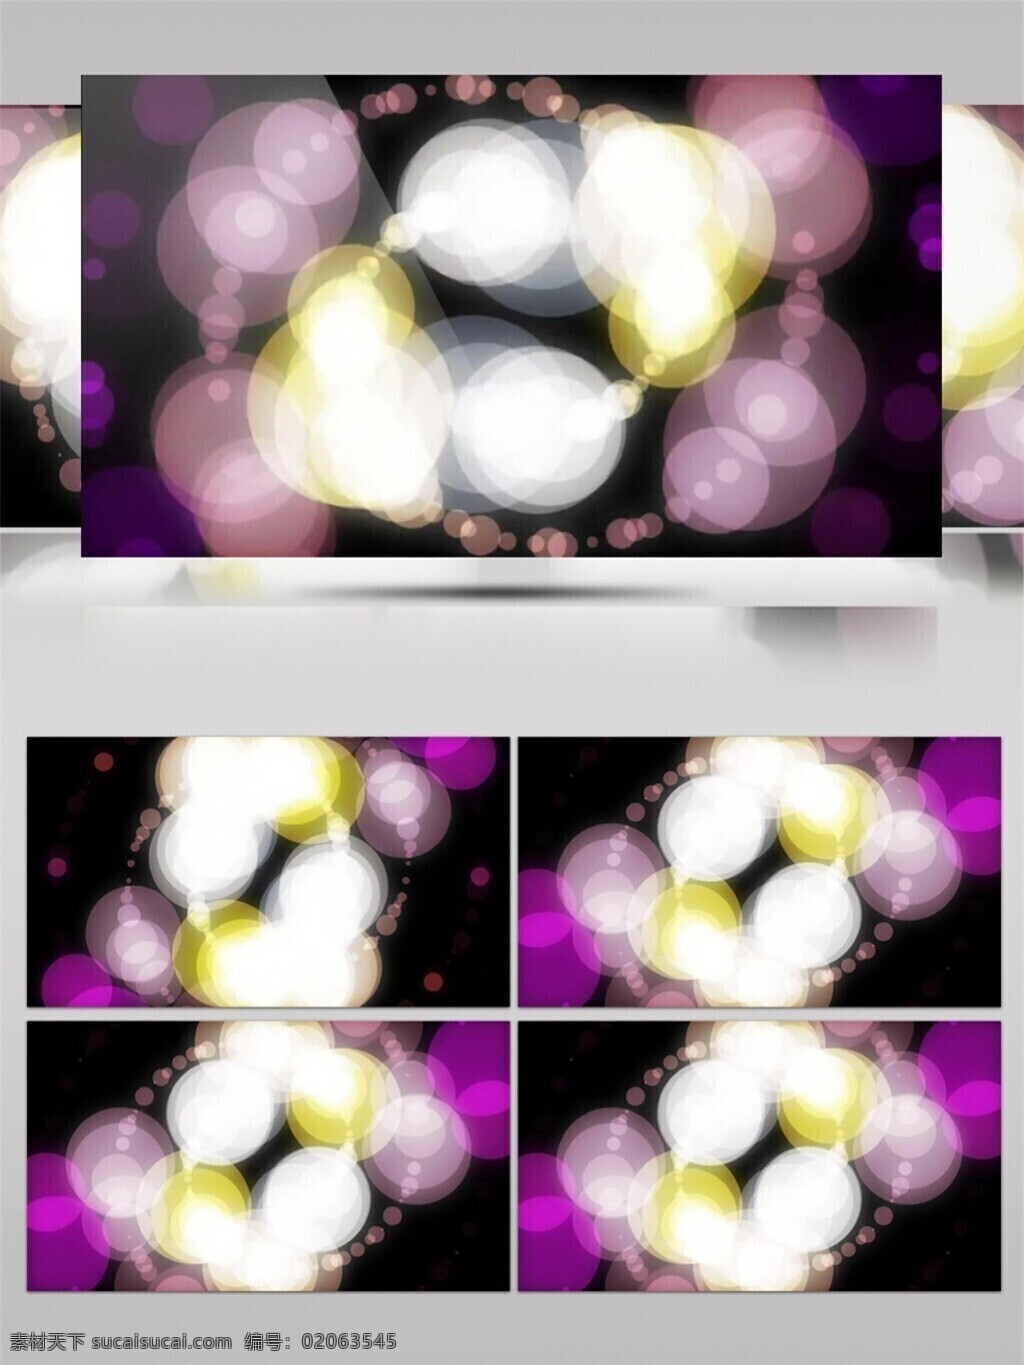 光斑散射 光束 激光 金色 视觉享受 手机壁纸 紫色 梦幻 气泡 动态 视频